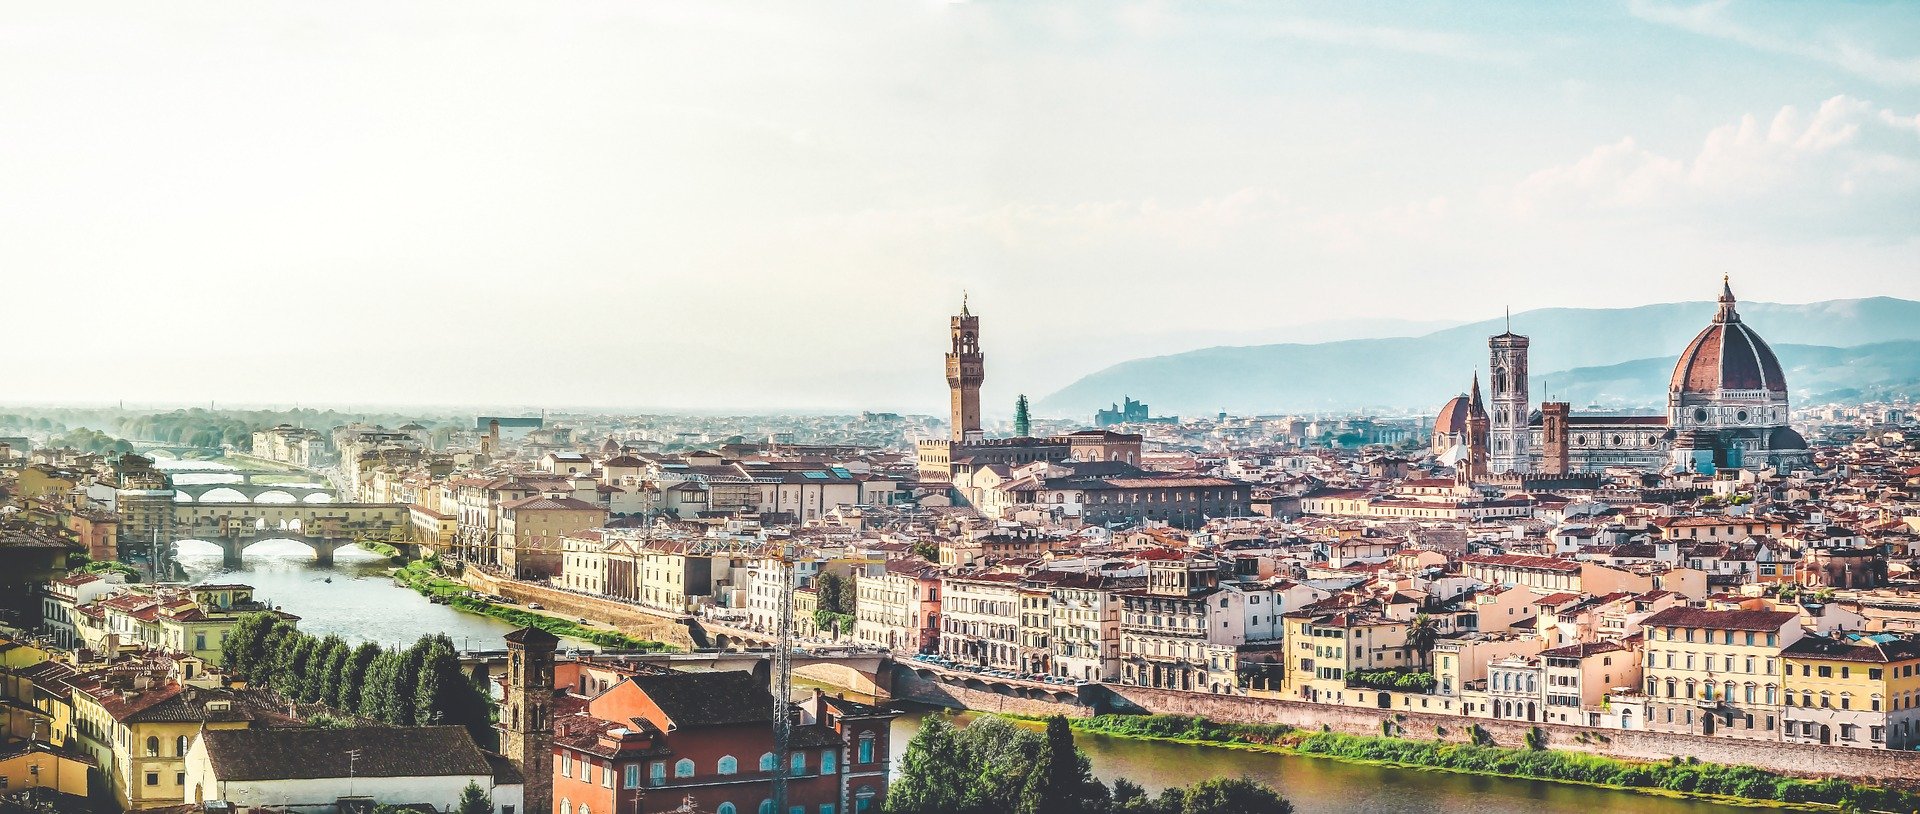 Cosa vedere a Firenze?